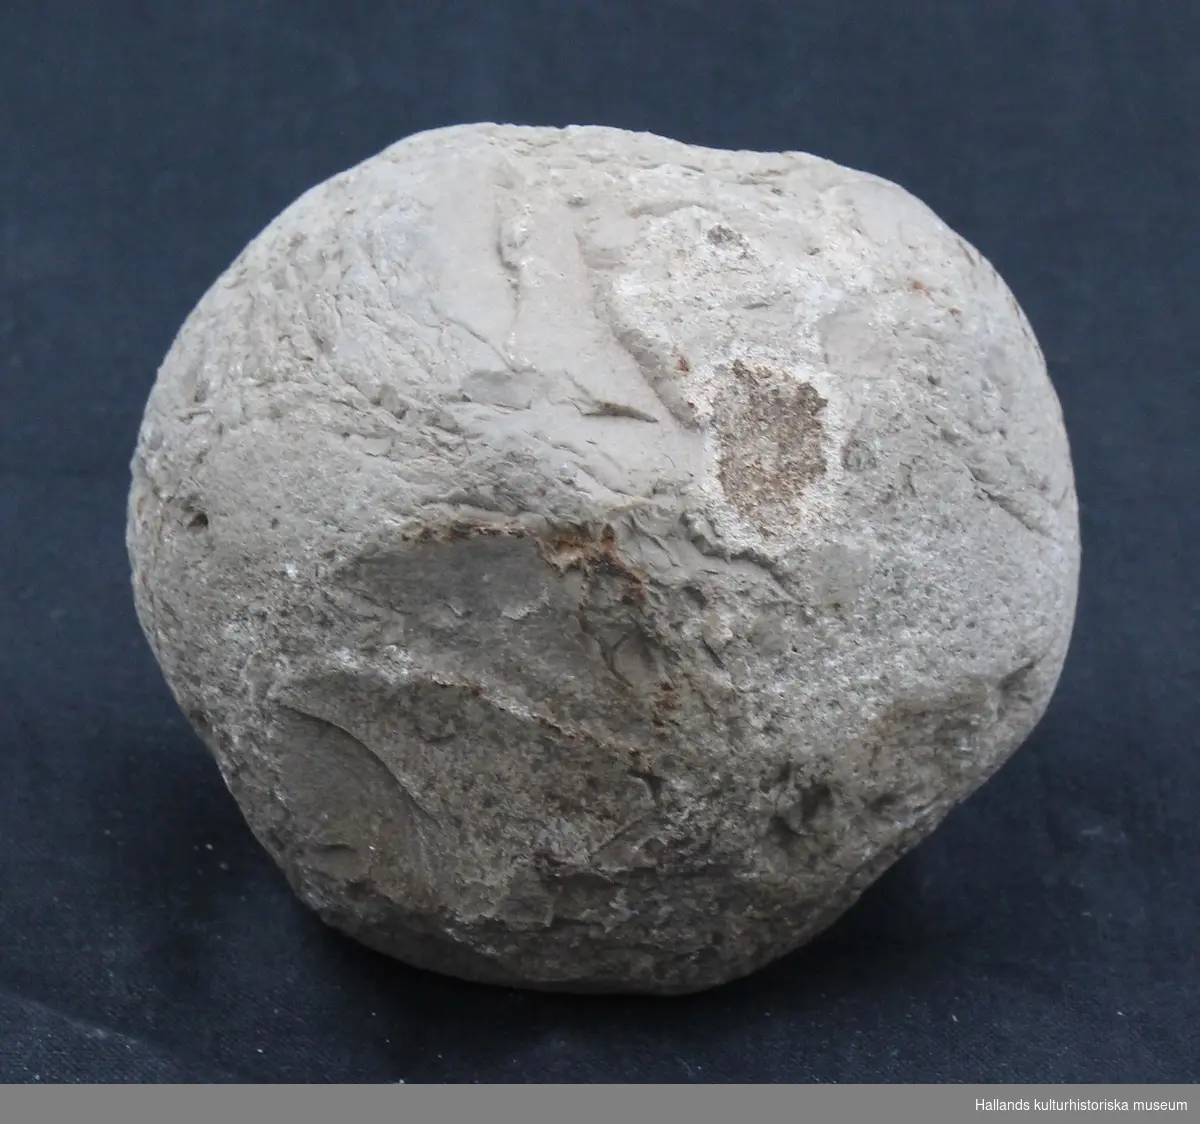 Knacksten i flinta. Lätt kantig form. Två fossil på ena sidan. Möjliga spår efter fossil i form av raka håligheter i stenen.